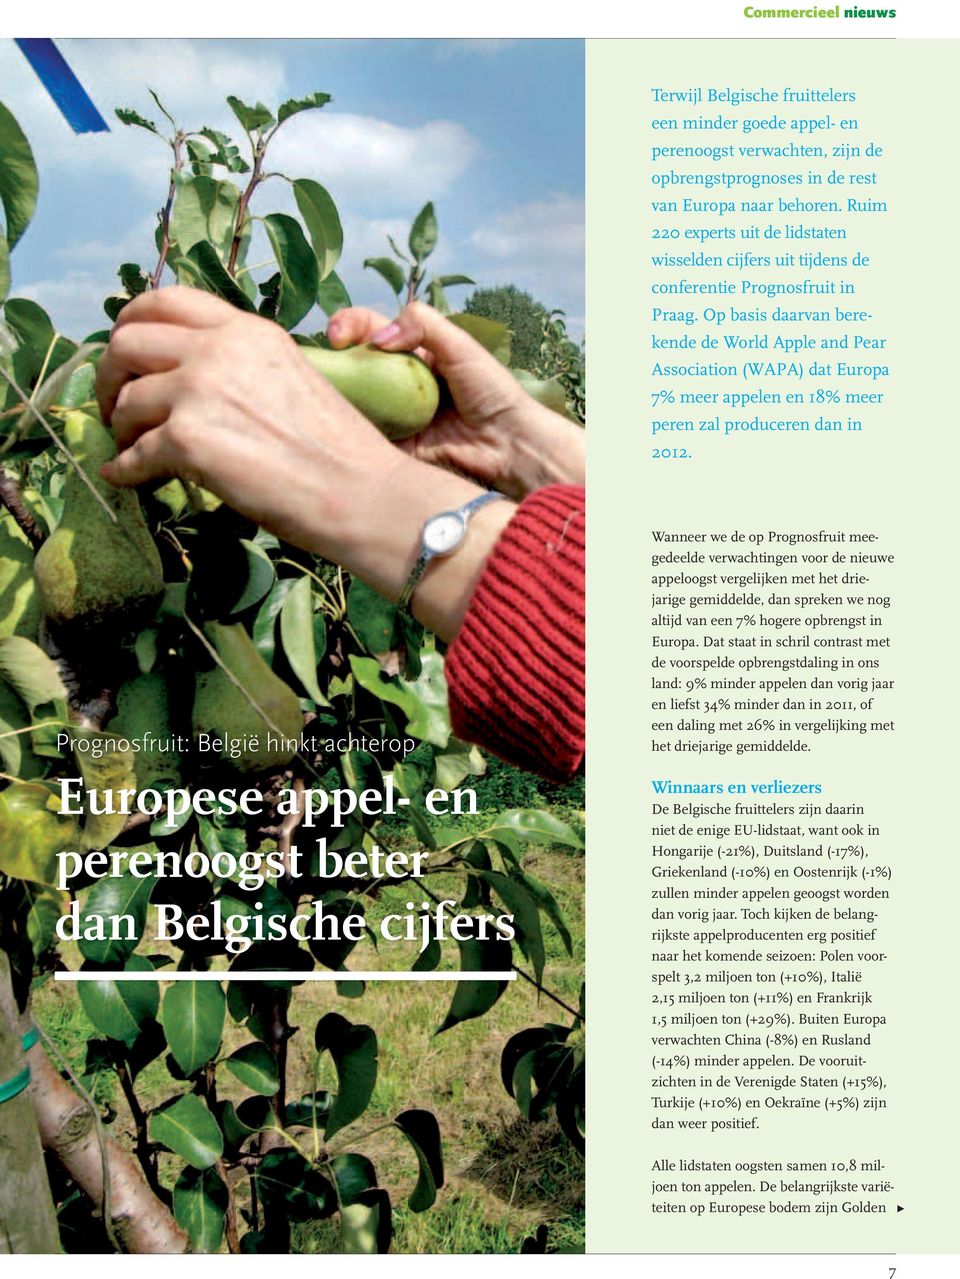 Op basis daarvan berekende de World Apple and Pear Association (WAPA) dat Europa 7% meer appelen en 18% meer peren zal produceren dan in 2012.